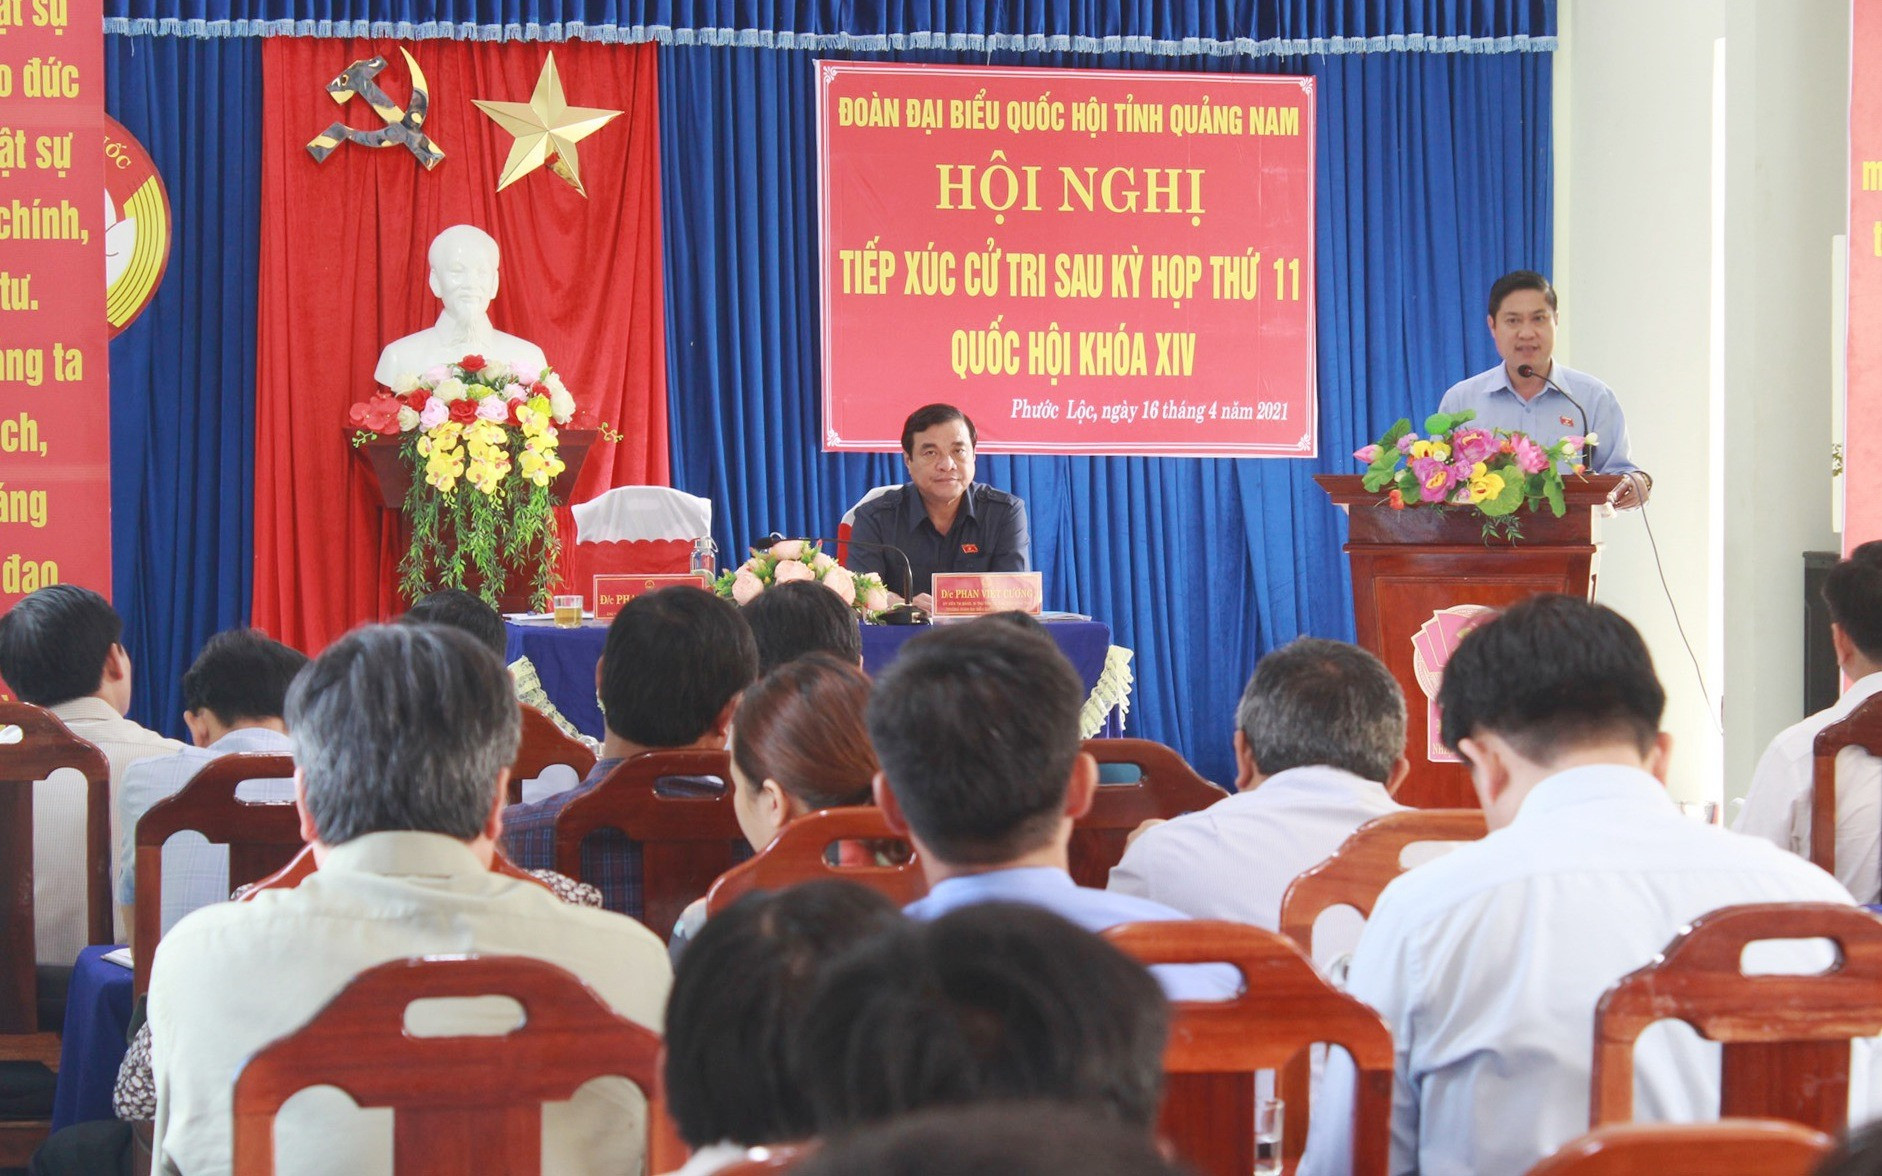 Đồng chí Phan Thái Bình thông tin tình hình hoạt động của đoàn Đại biểu Quốc hội tỉnh cho đông đảo cử tri xã Phước Lộc. Ảnh: T.C